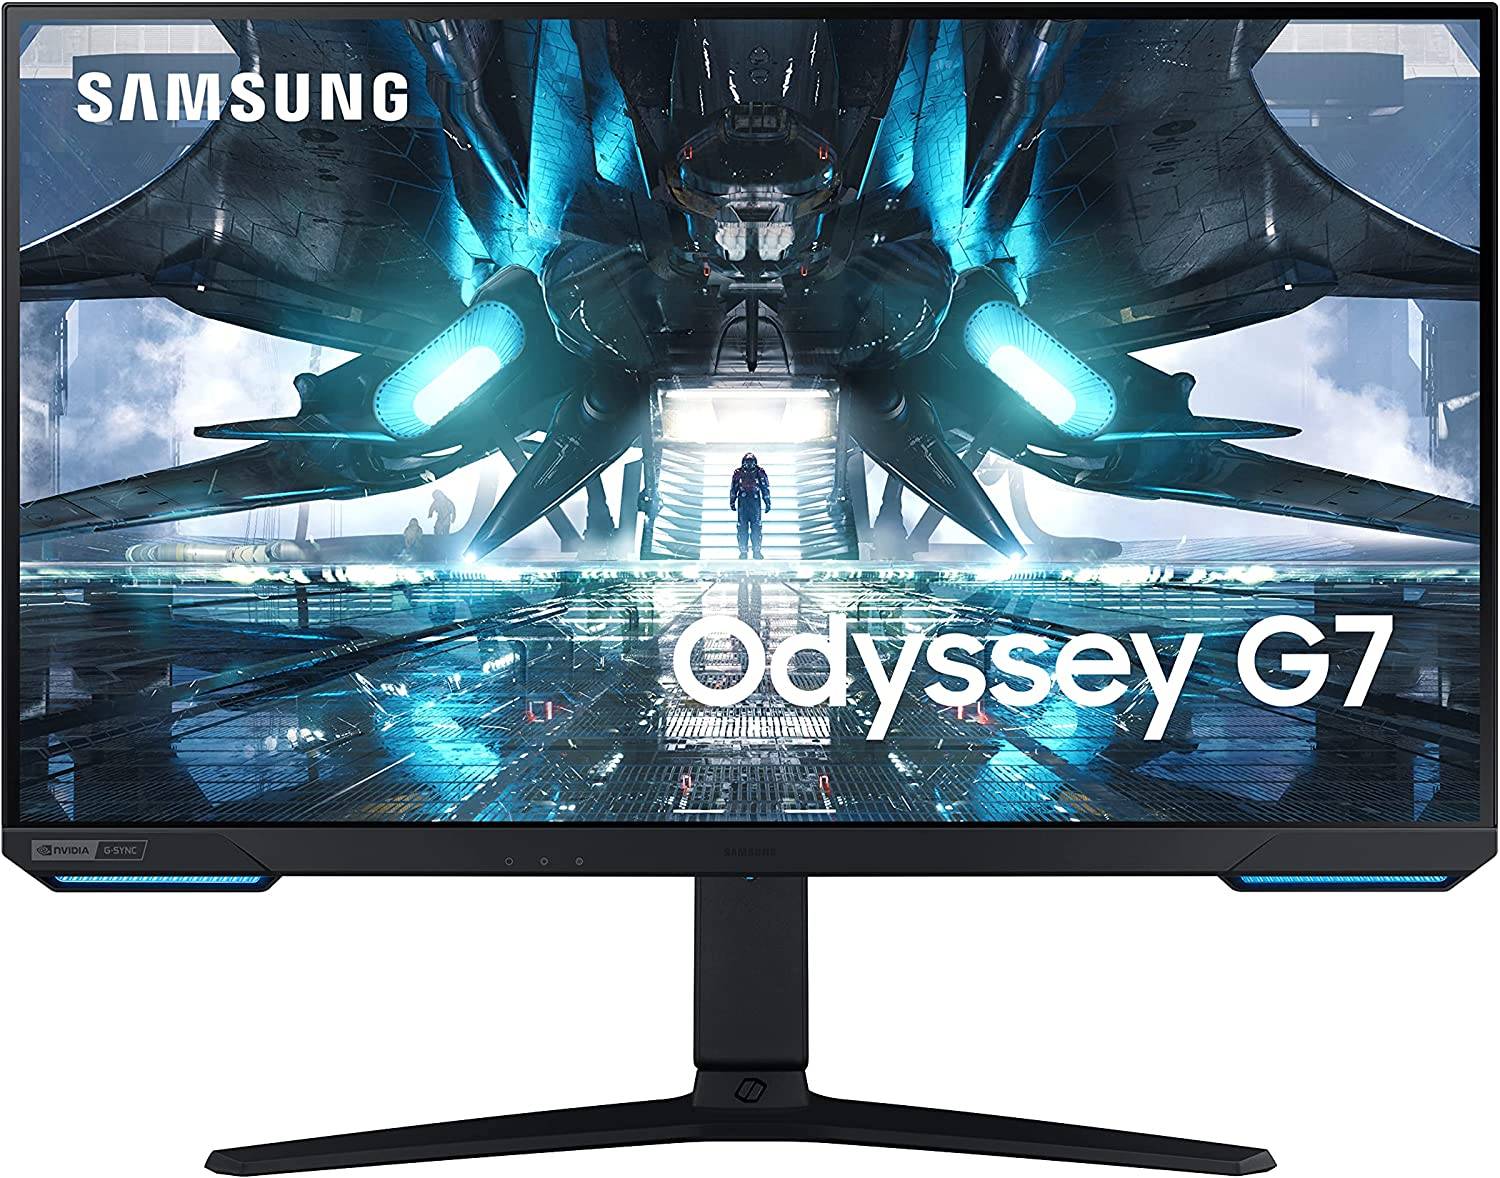 Samsung Electronics amplía su gama de monitores Odyssey para